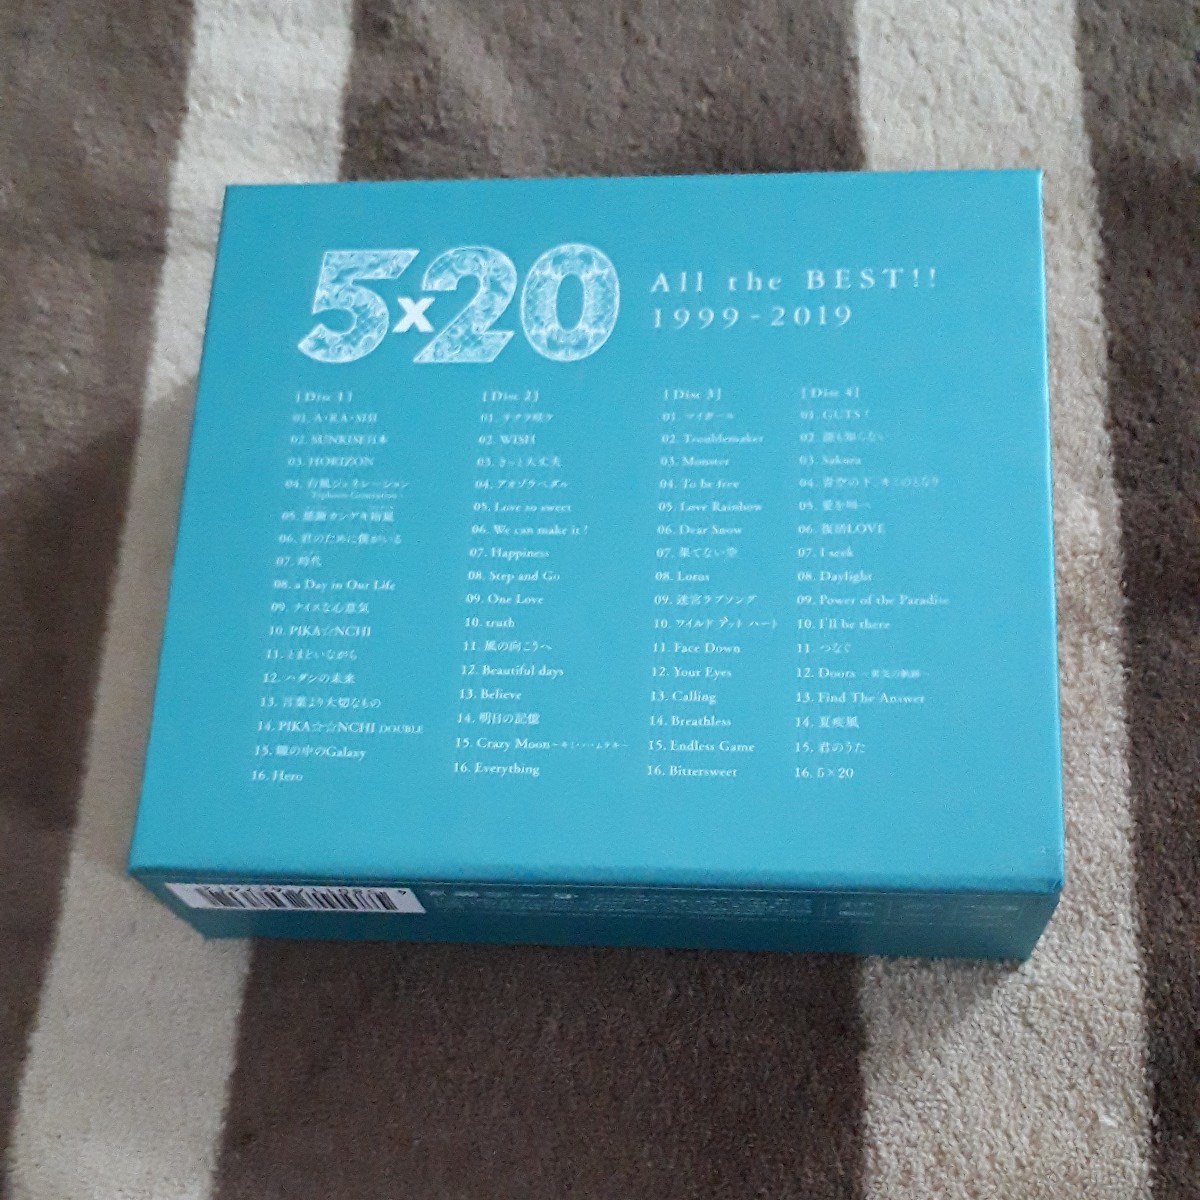 嵐 ARASHI 5×20 All the BEST!! 1999-2019 初回限定盤 4CD+DVD ベストアルバム BOX ARASHI LIVE CLIPS _画像2